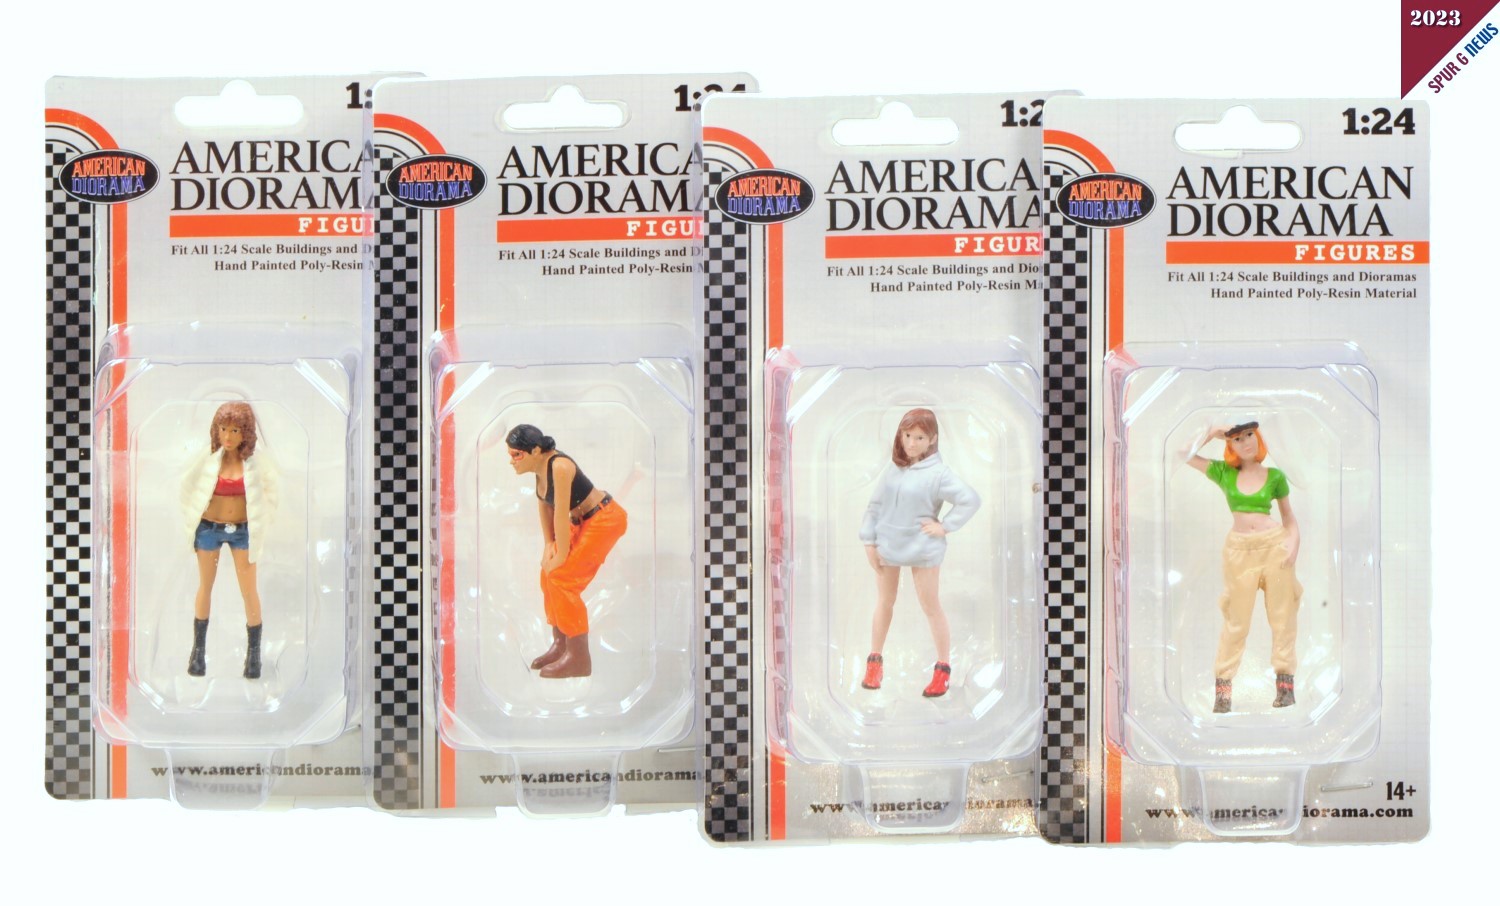 HIP HOP Szene - Figuren von American Diorama!   